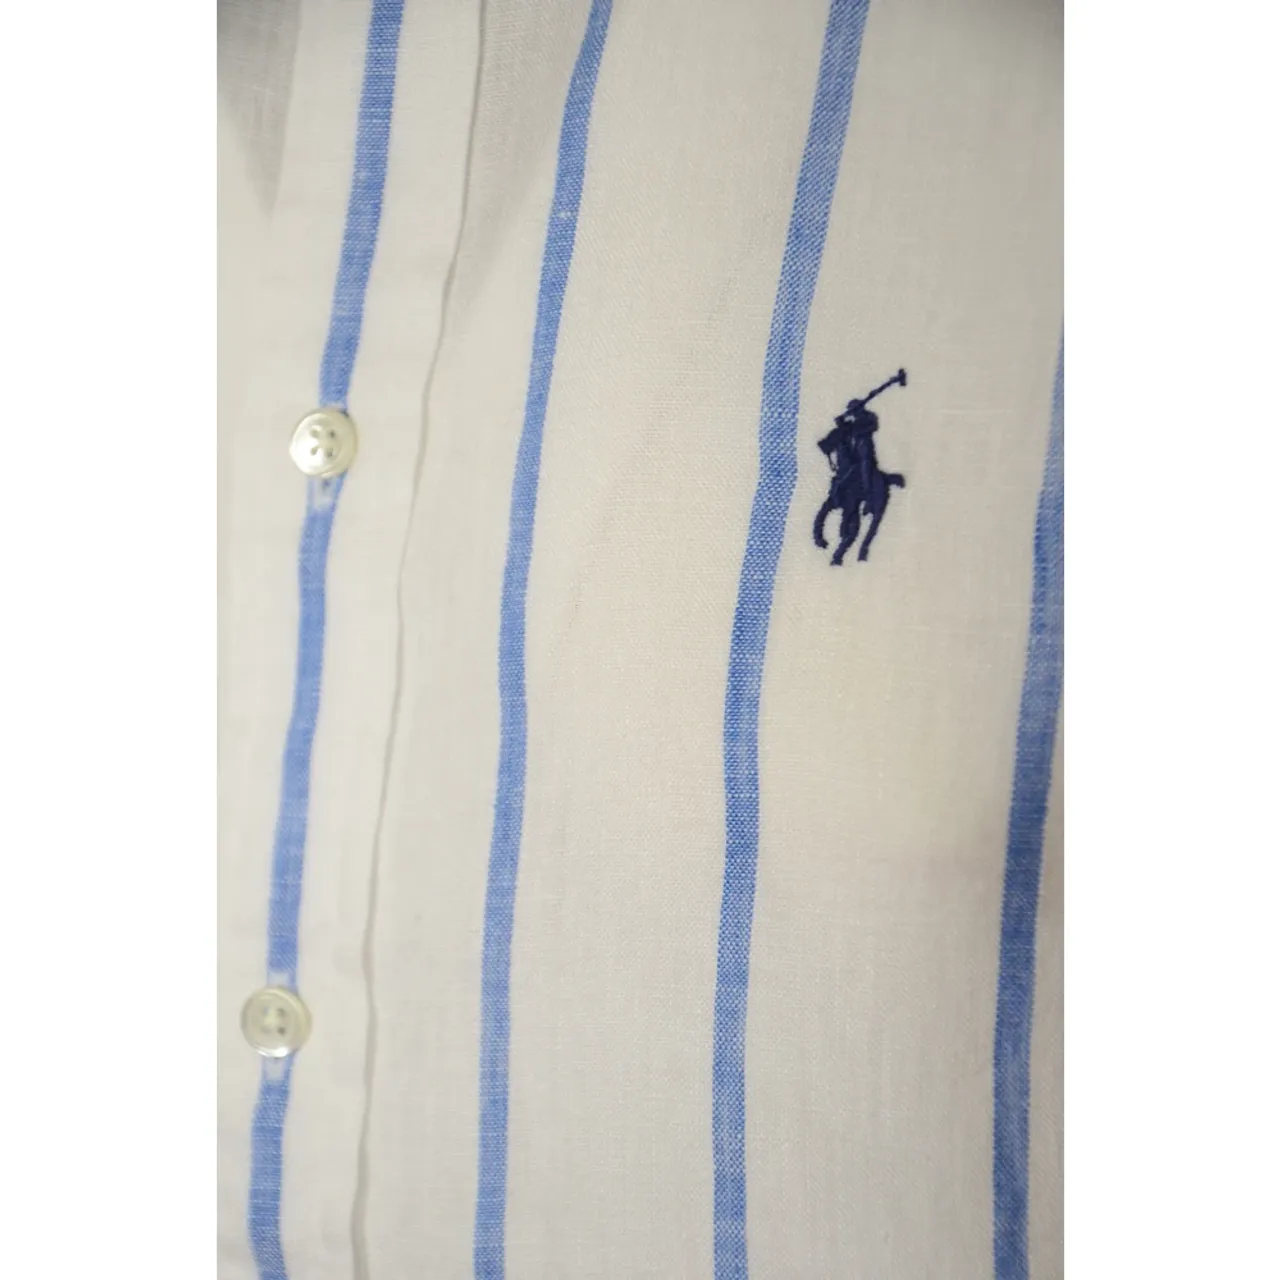 Ralph Lauren , Polo Ralph Lauren Shirts ,Multicolor female, Sizes: